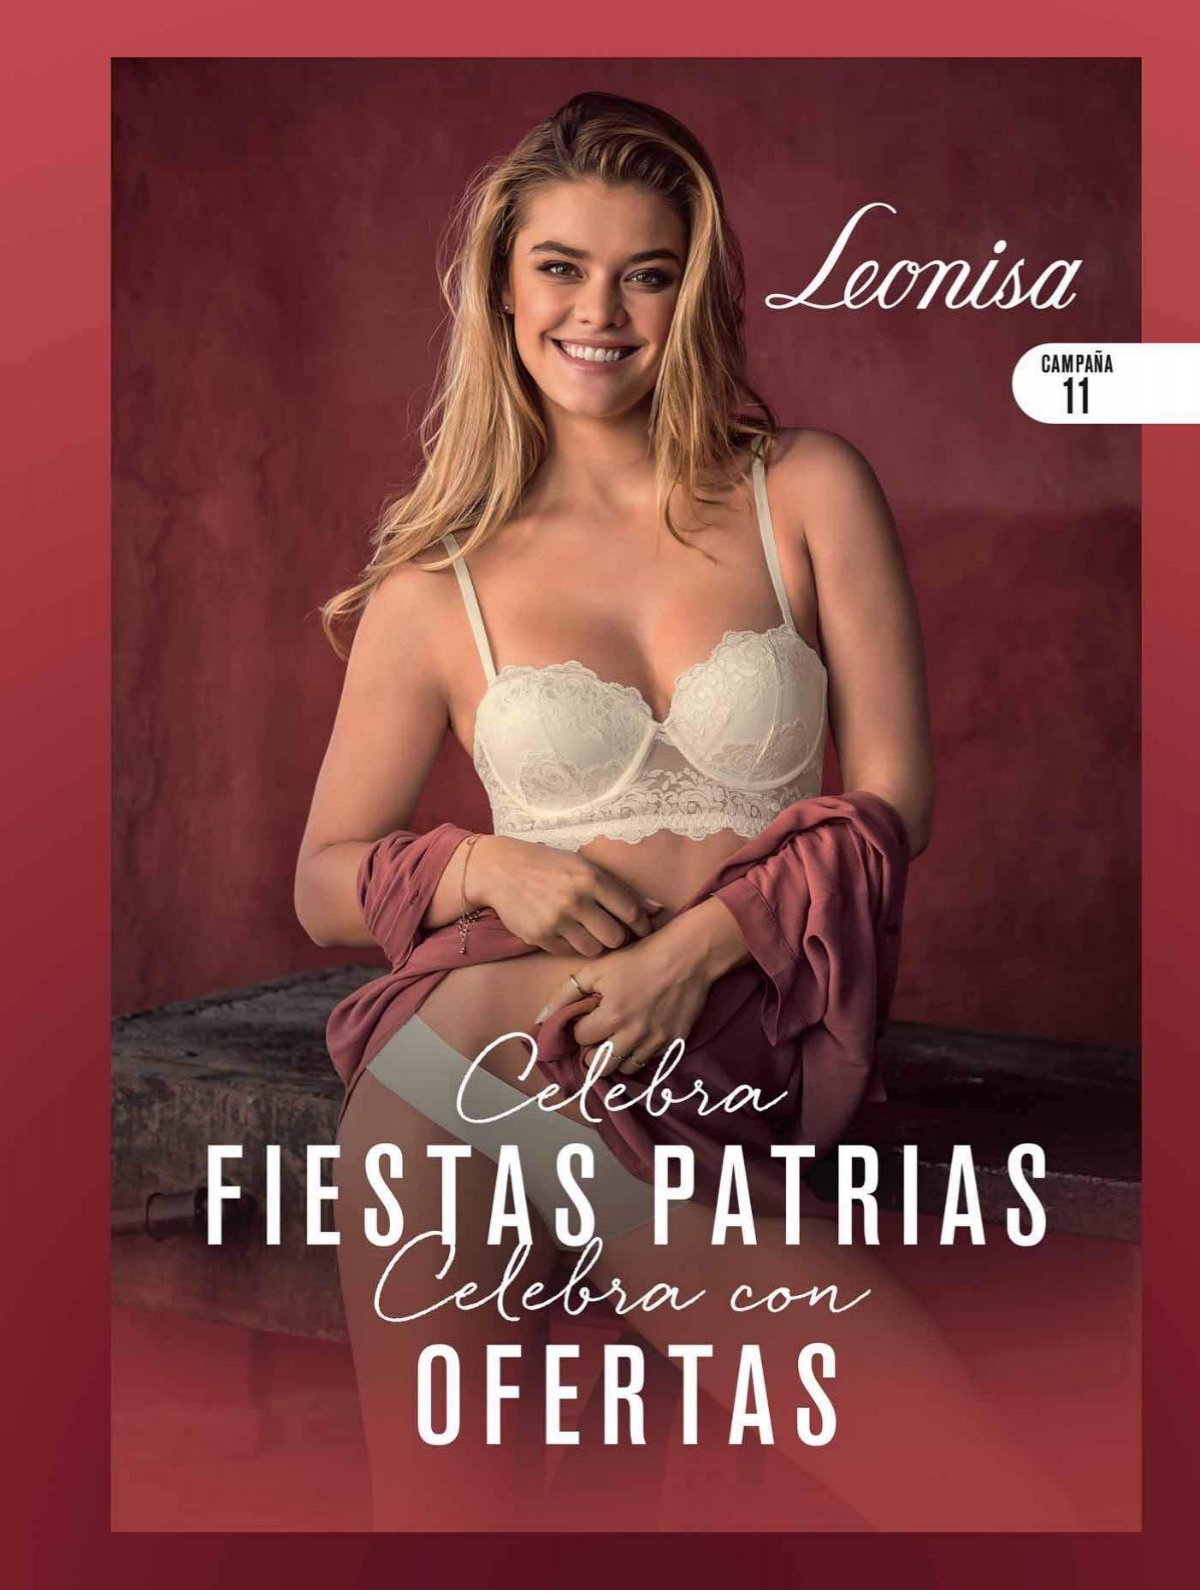 Leonisa - Celebra fiestas patrias, celebra con ofertas